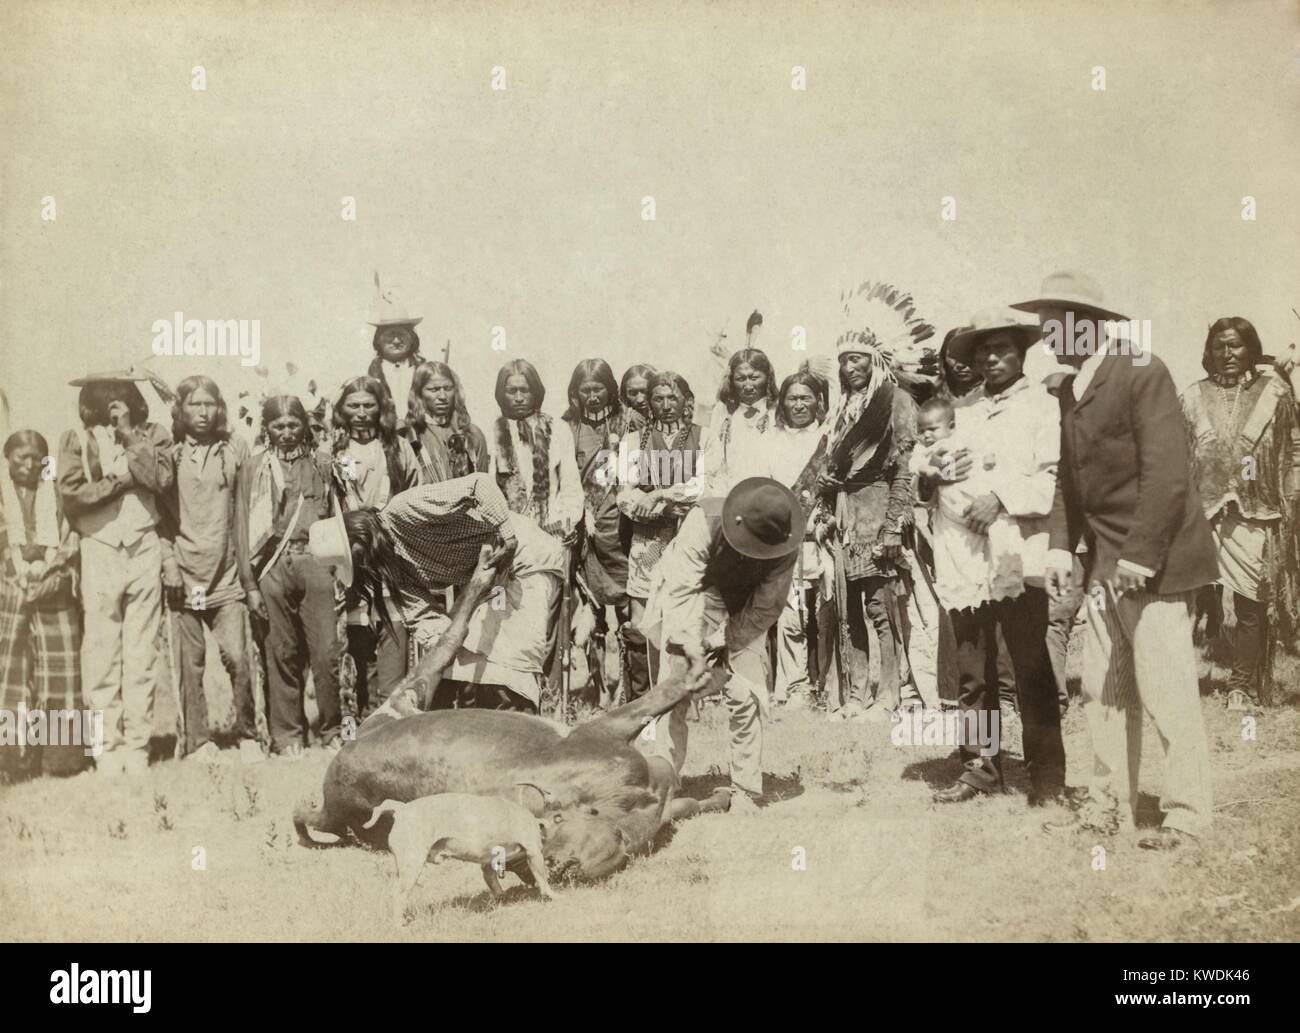 Gruppe von Lakota skinning Rinder, während Fleisch rationen Verteilung, C. 1887-92. Im Pine Ridge Reservat, je nach Vertrag, Rindfleisch und anderen Rationen wurden monatlich zur Verfügung gestellt. Ausfall ausreichend mit Nahrungsmitteln zu versorgen Inder traditionelle Quellen zu ersetzen, wurde eine wesentliche Ursache der indischen Armut, die zu den Ghost Dance Bewegung und dem Wounded Knee Massacre. Foto von John Grabill (BSLOC 2017 18 36) Stockfoto